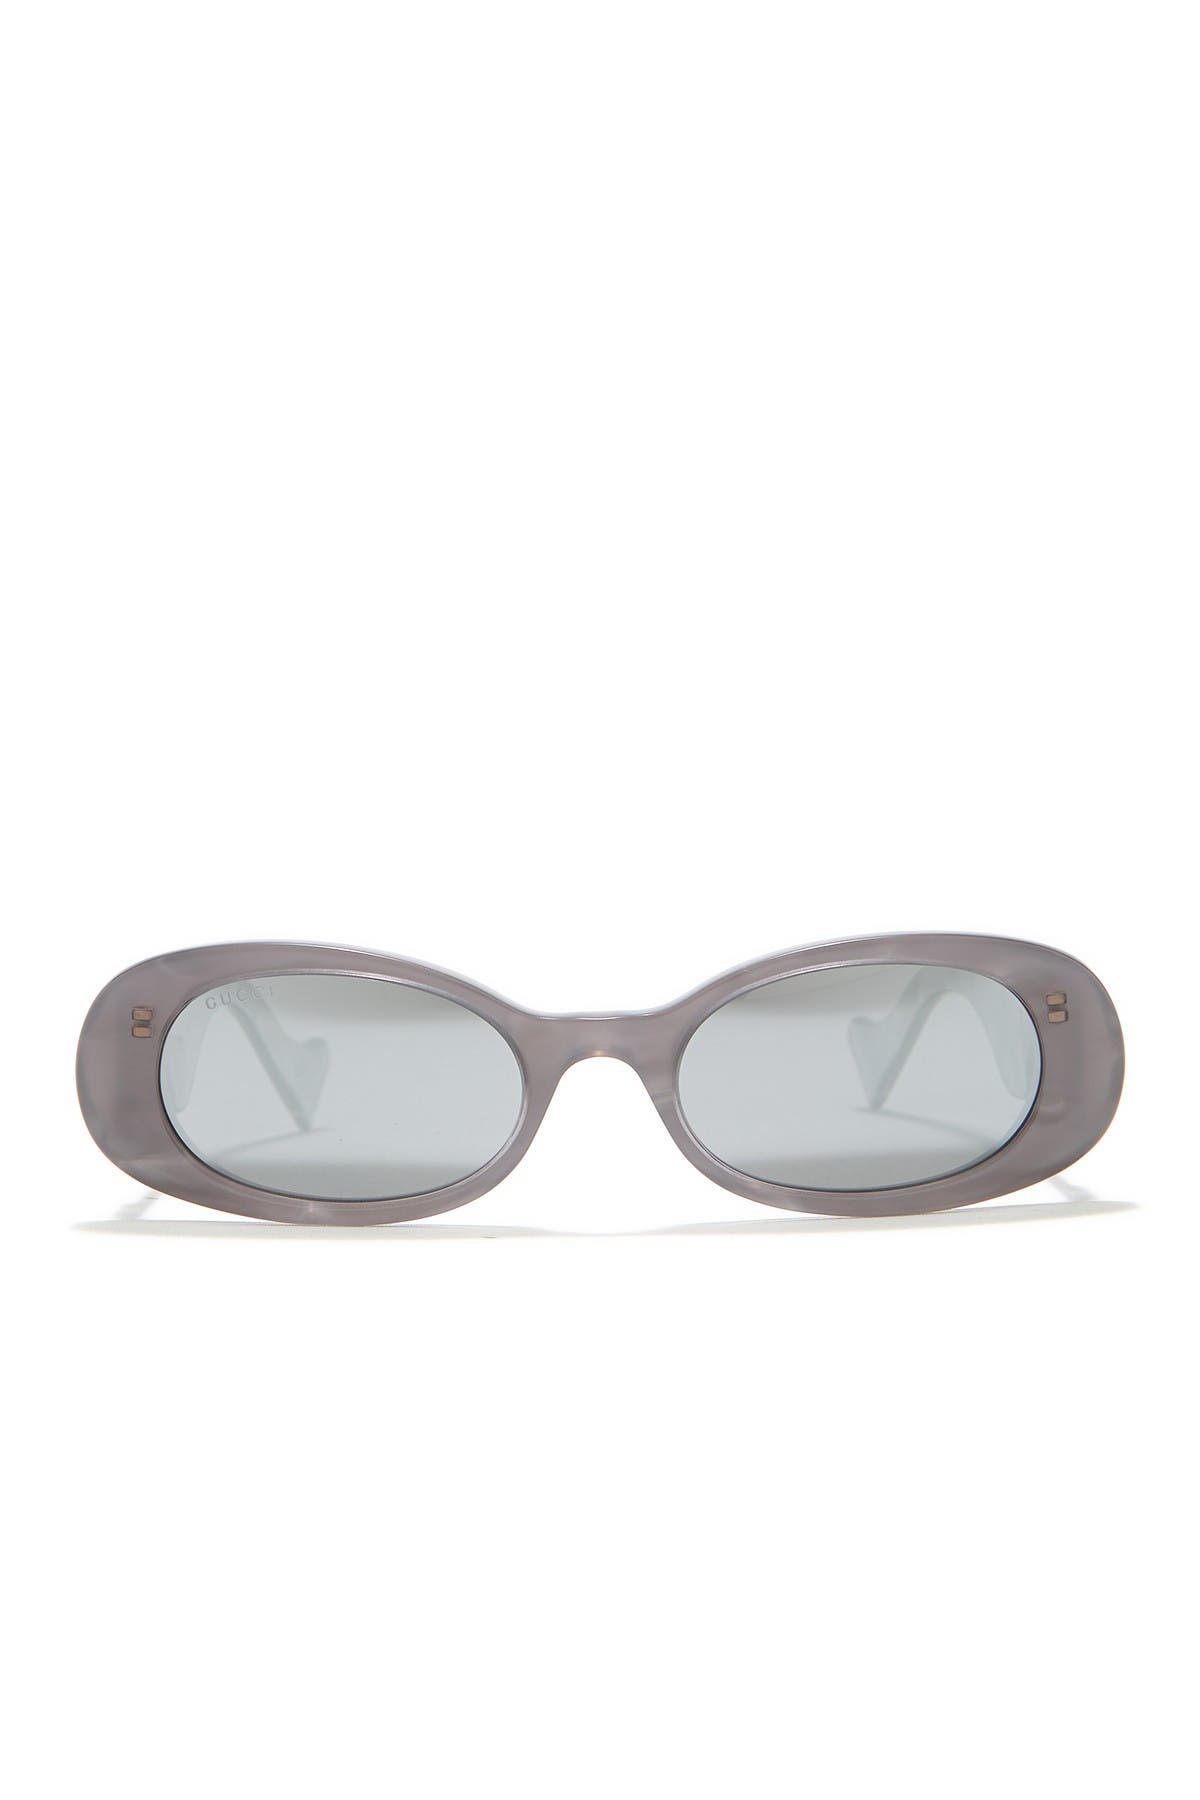 gucci 52mm round sunglasses